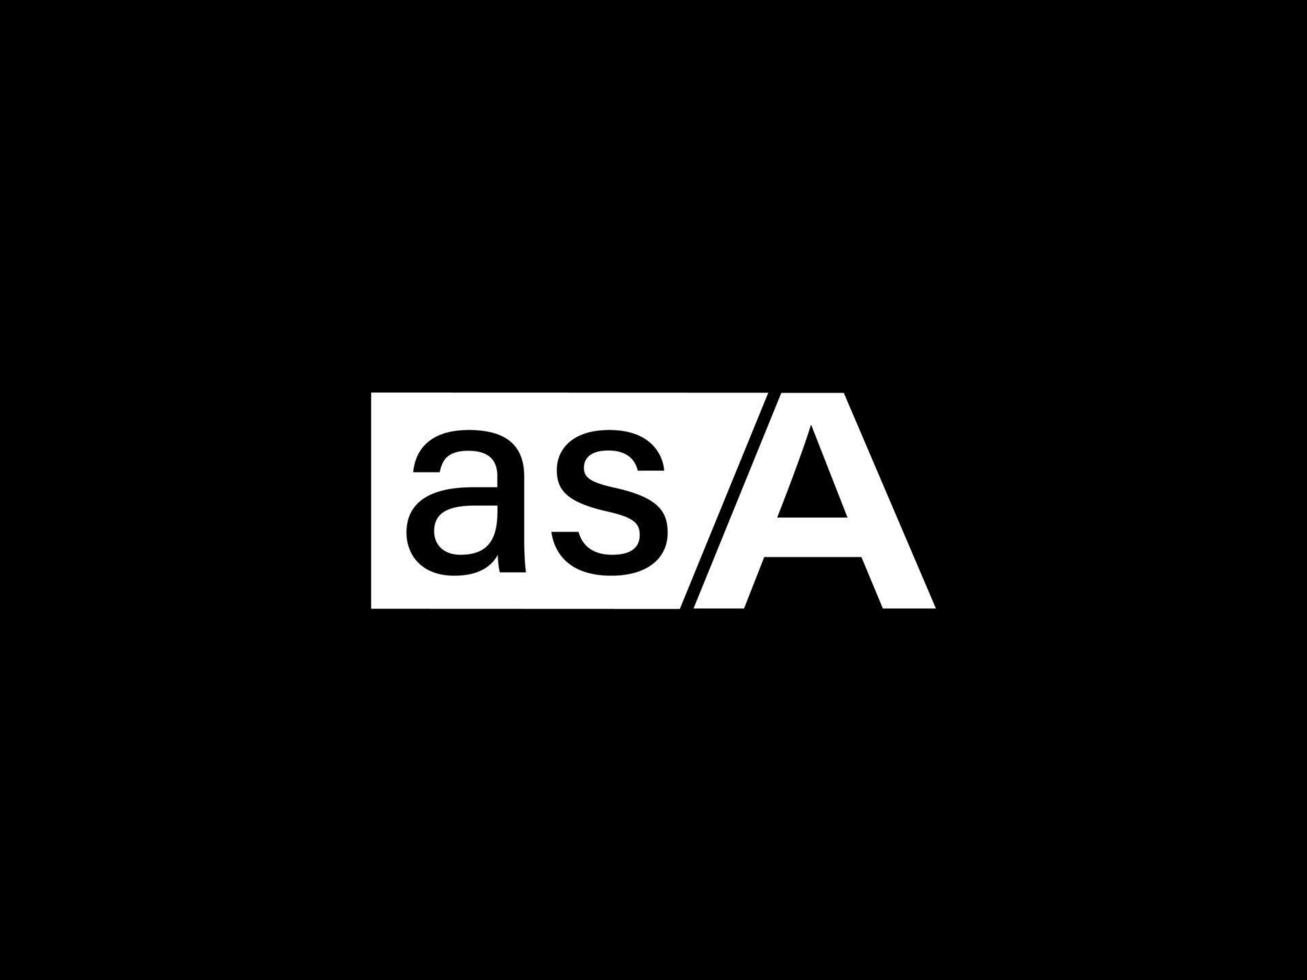 asa-Logo und Grafikdesign Vektorgrafiken, Symbole isoliert auf schwarzem Hintergrund vektor